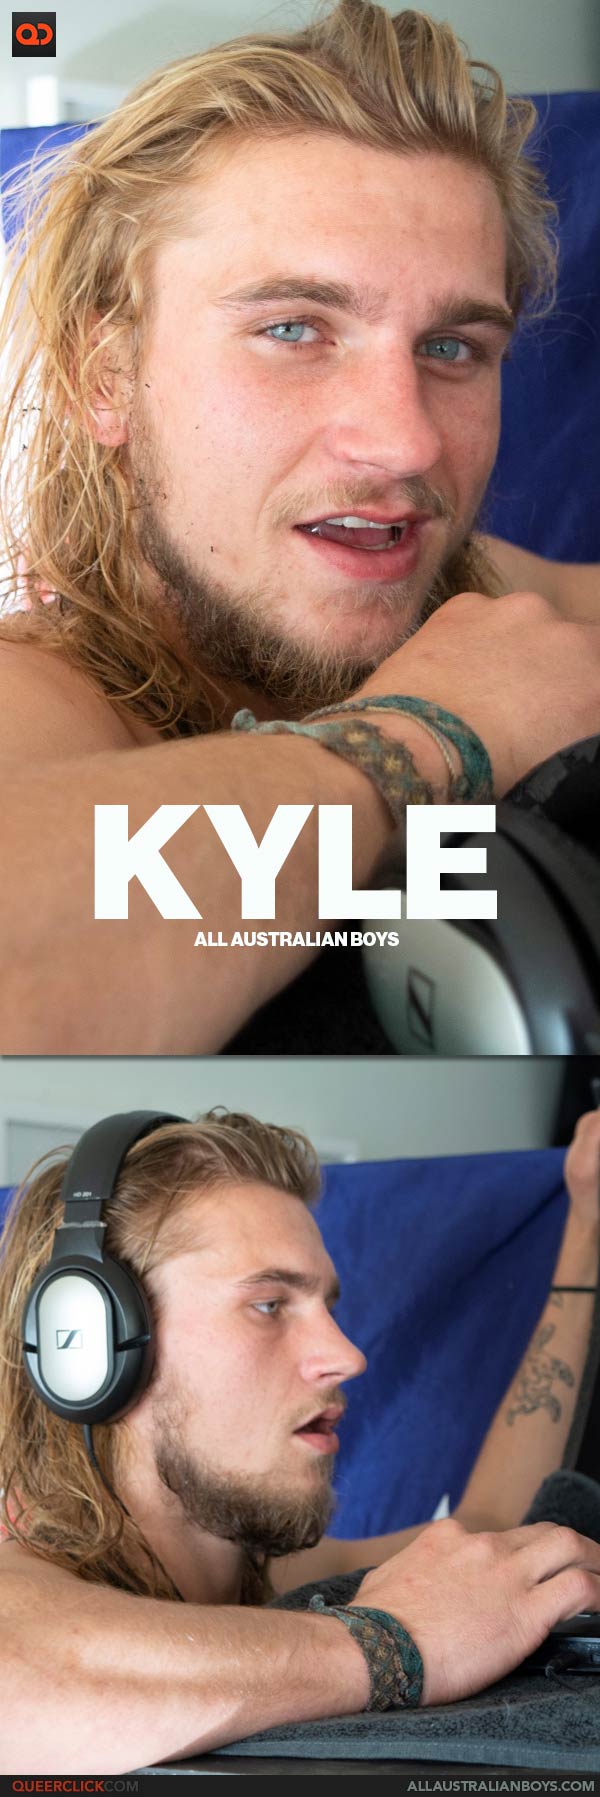 All Australian Boys: Kyle